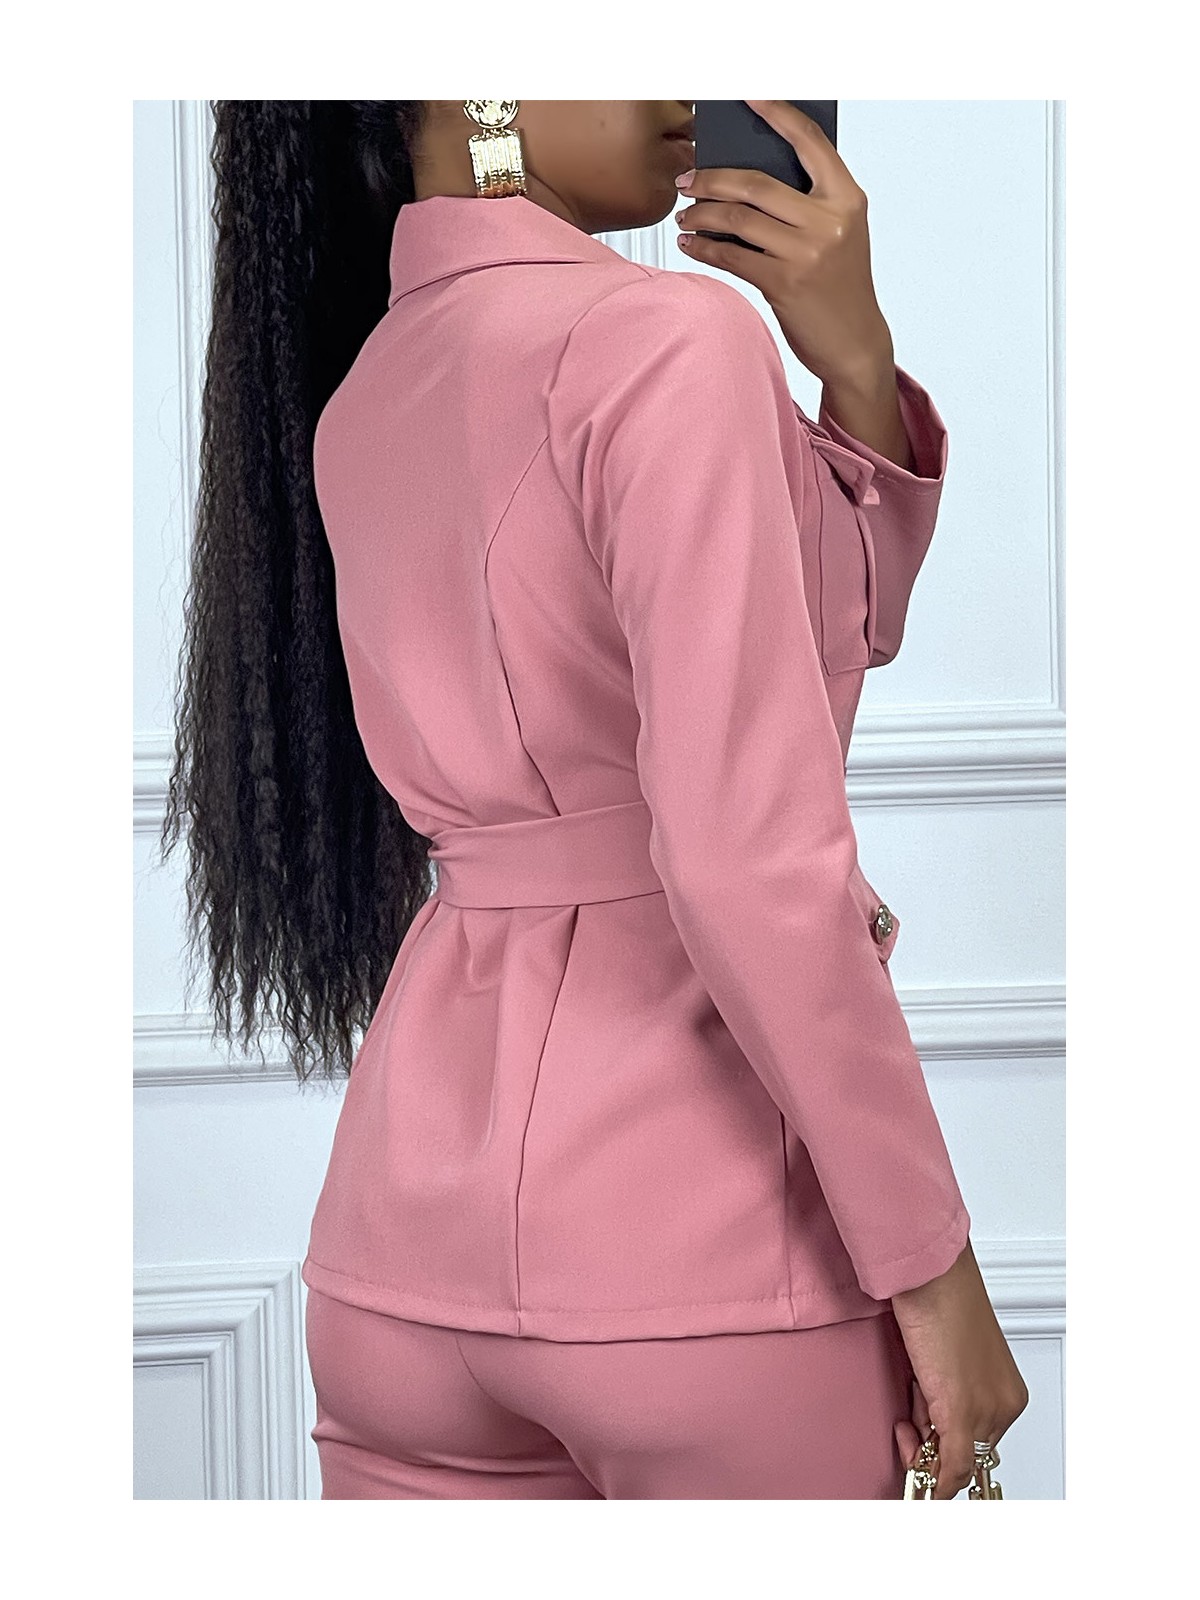 EnPEmble tailleur rose veste et pantalon avec ceinture réglable - 4